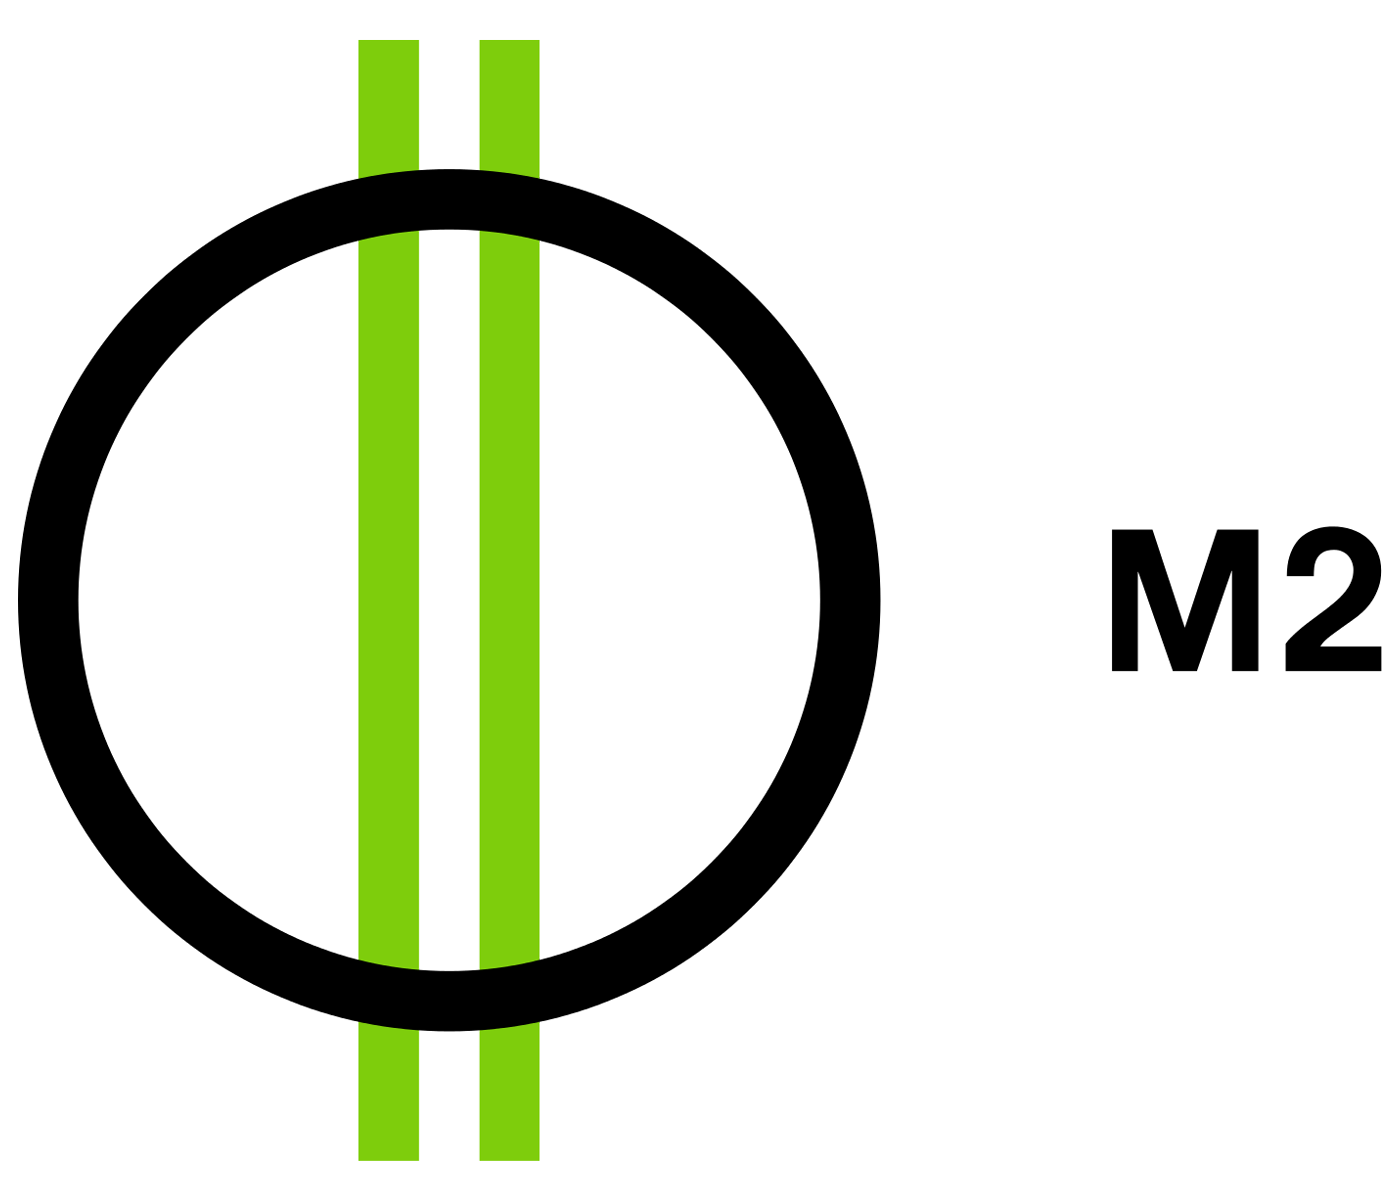 M2 Logo - File:M2 logo 2012.png